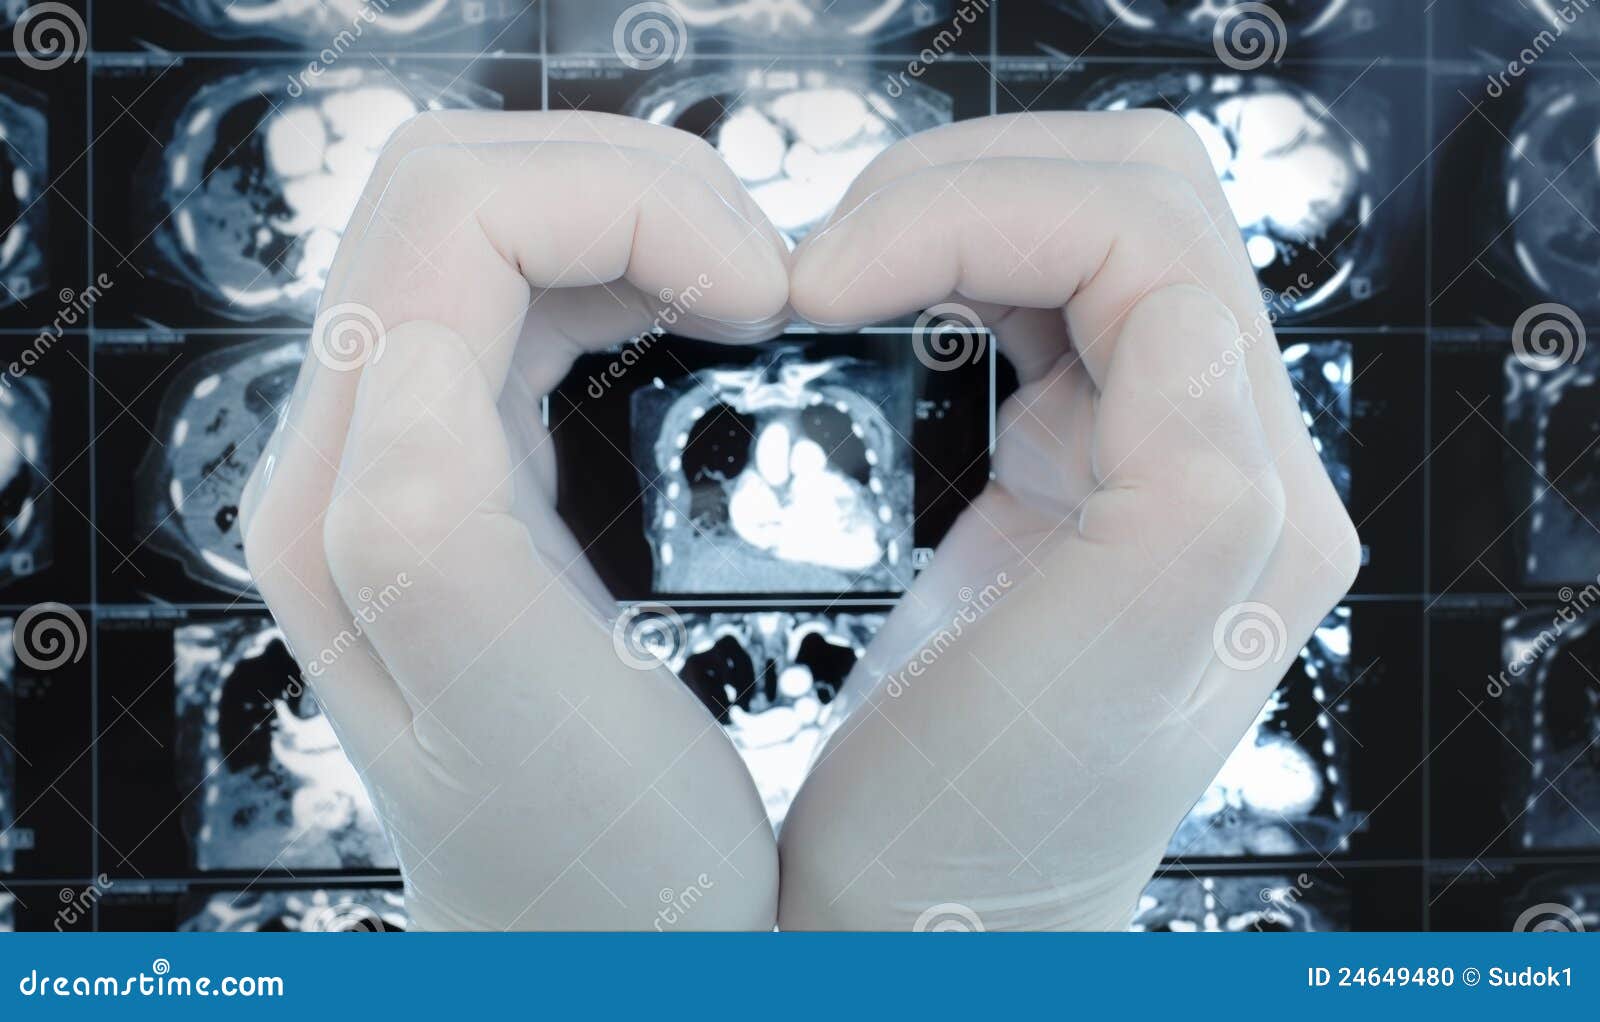 Le mani fanno un cuore che abbraccia l'immagine sulla ricerca di CT. La mano fa un cuore che abbraccia l'immagine sulla ricerca di CT. Professione di simbolo nella medicina, amore del suo lavoro.